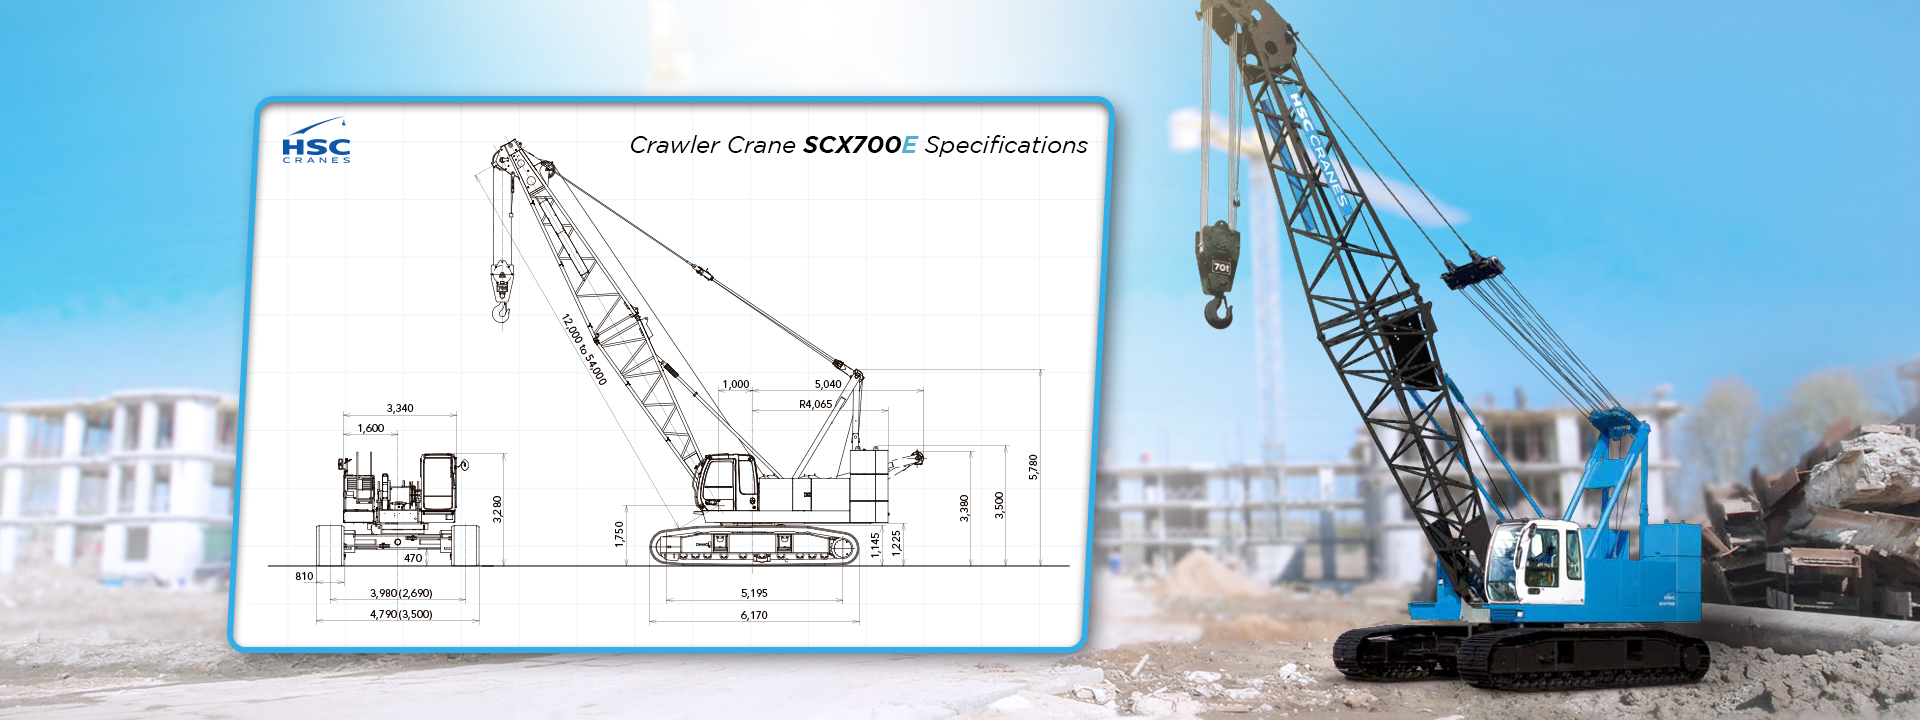 Crawler crane scx700e